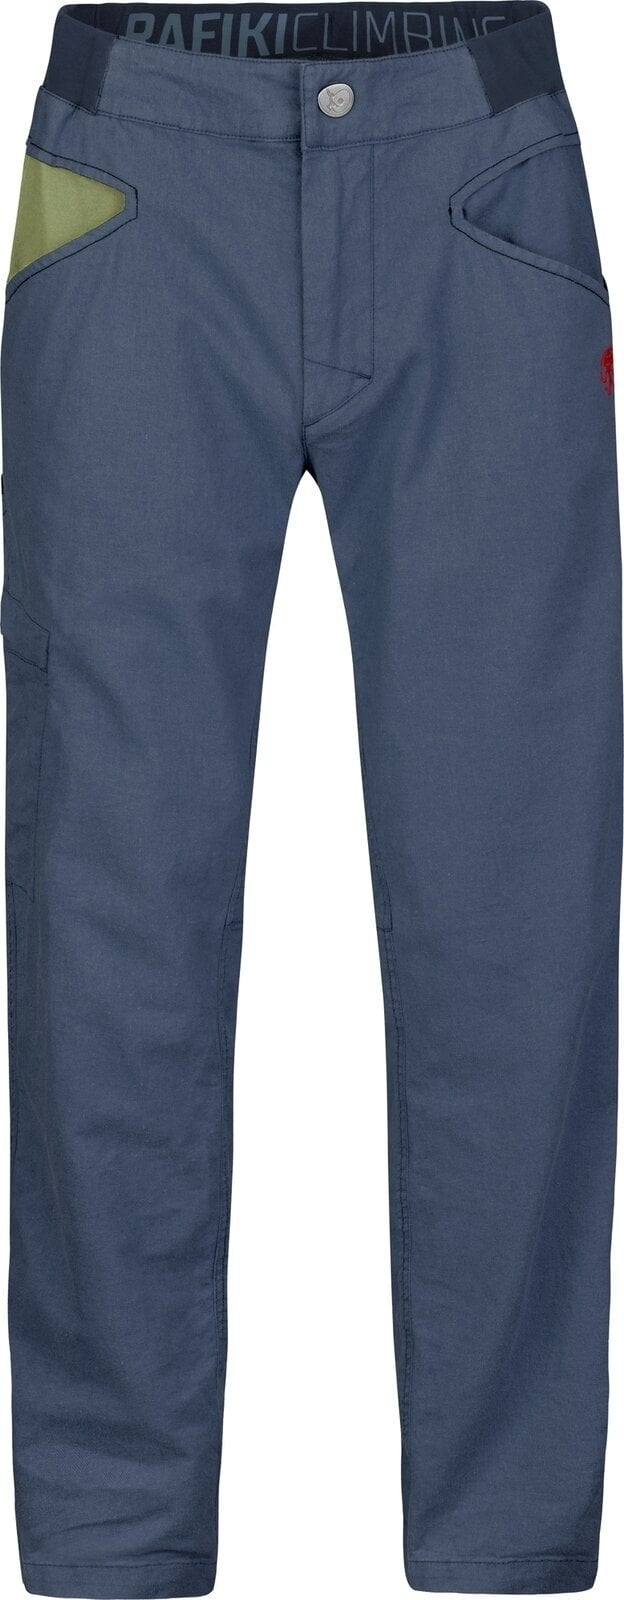 Outdoor Pants Rafiki Grip Man Pants India Ink XL Outdoor Pants